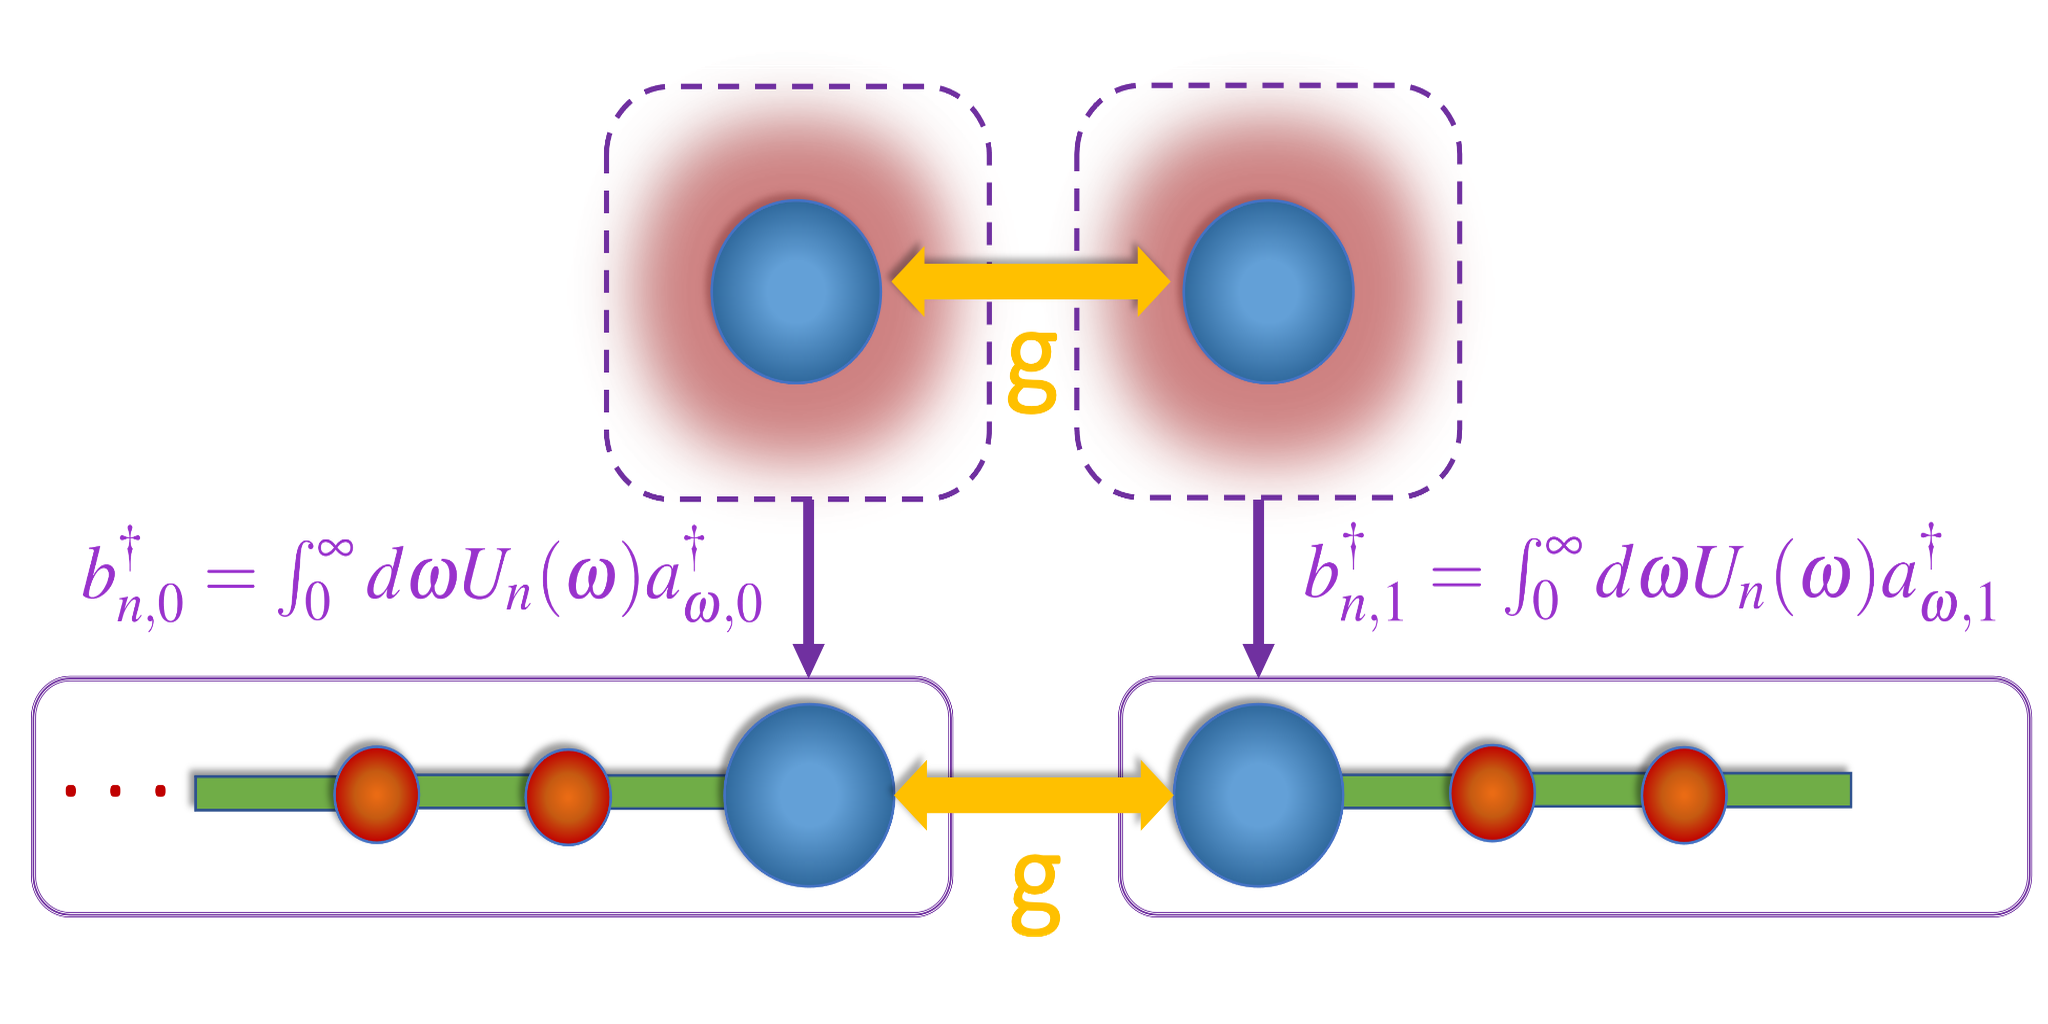 ऑर्थोगोनल बहुपद के साथ खुली प्रणालियों की गैर-परेशान गतिशीलता का डिजिटल क्वांटम सिमुलेशन